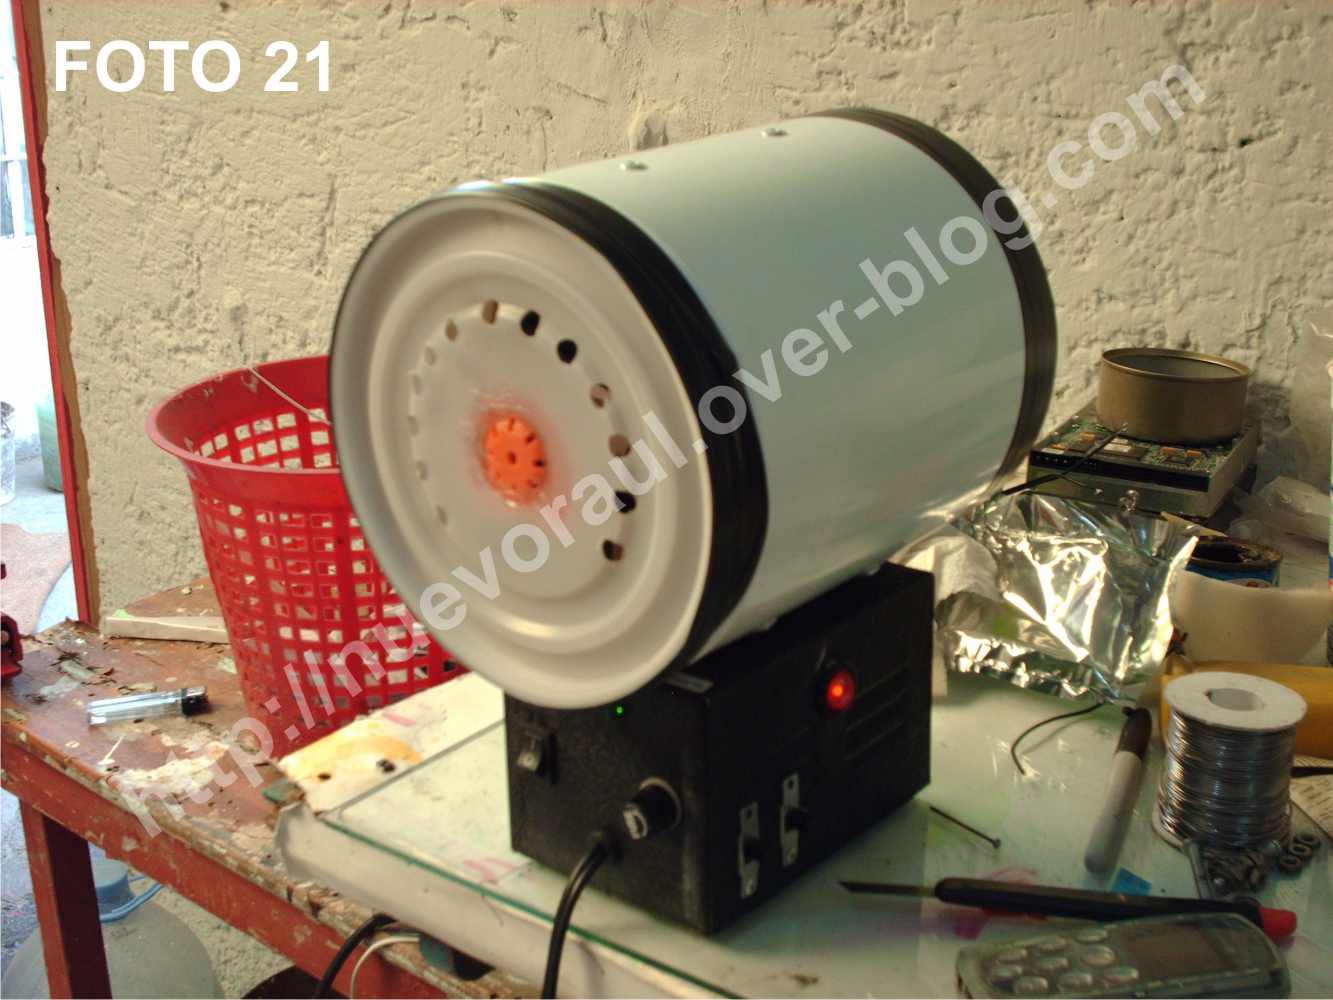 construyendo un purificador de aire casero (proyecto escolar) - El blog de  nuevoraul